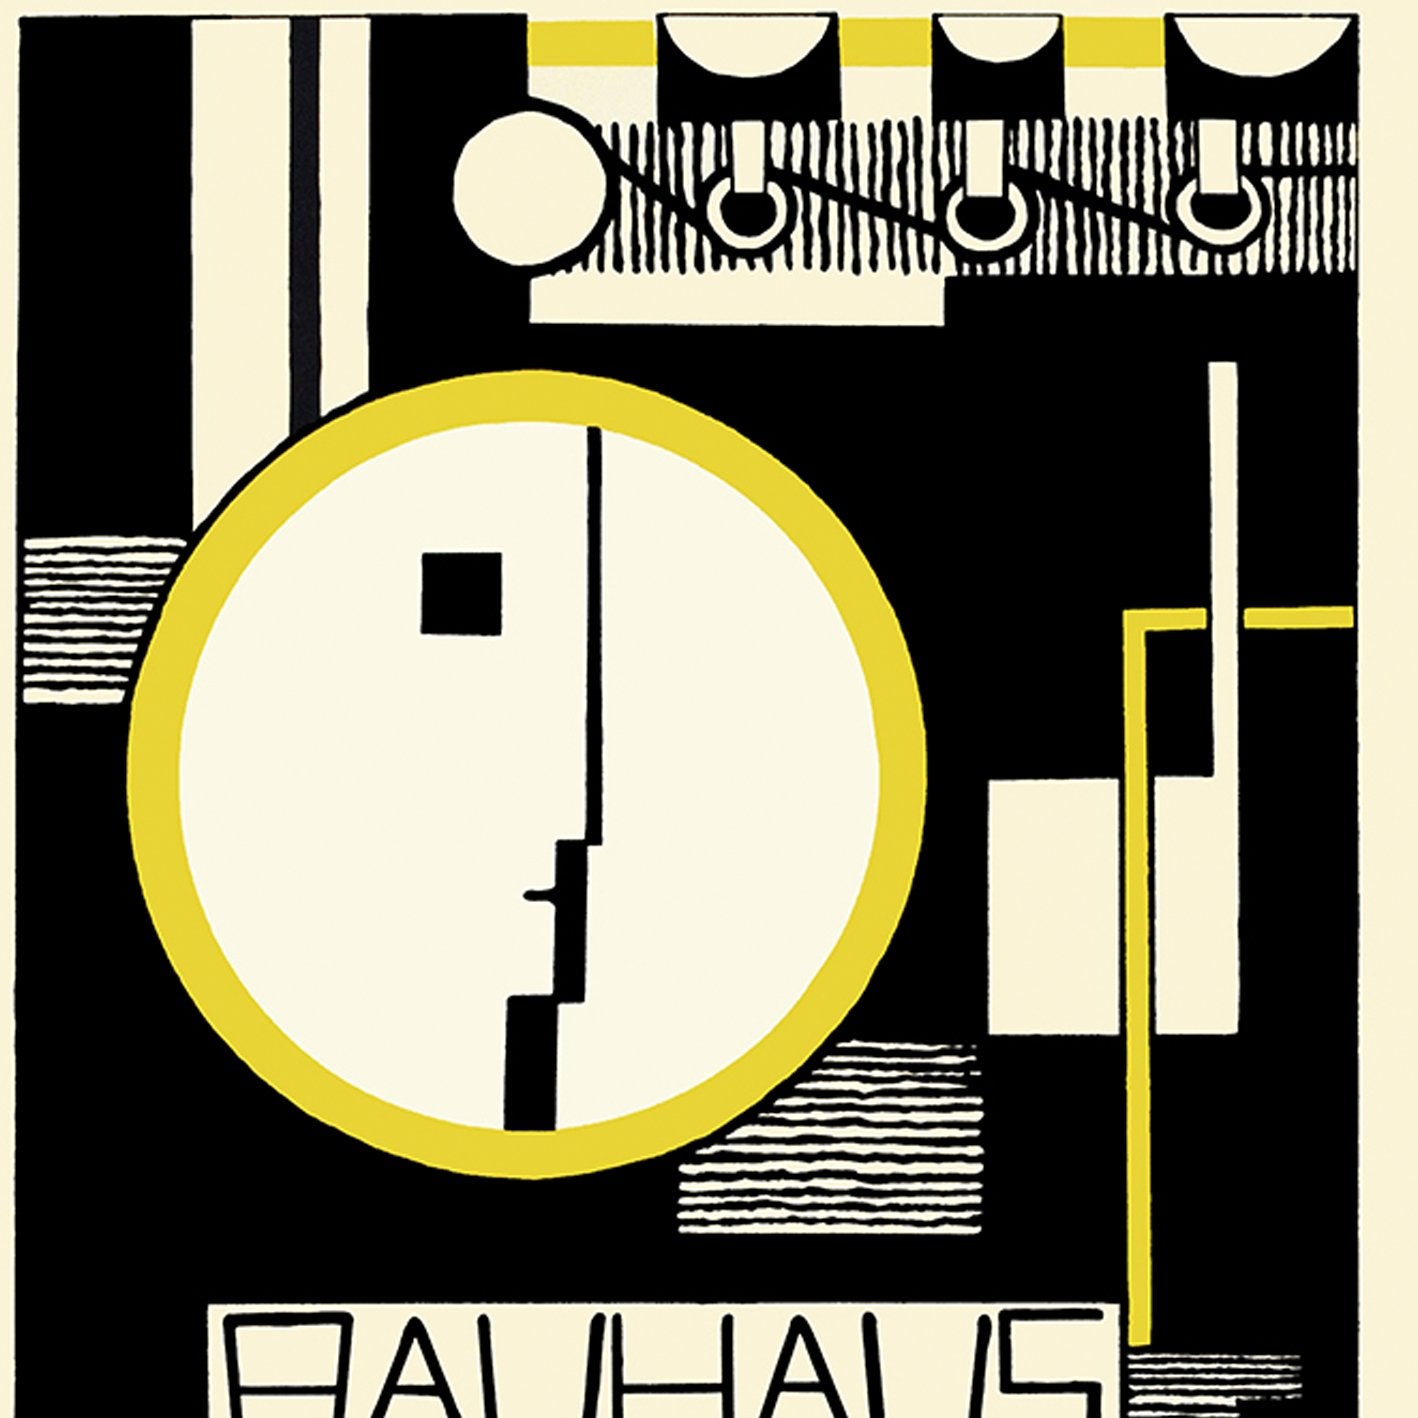 Bauhaus Ausstellung Weimar 1923 by Baschant Schwarz und Gelb